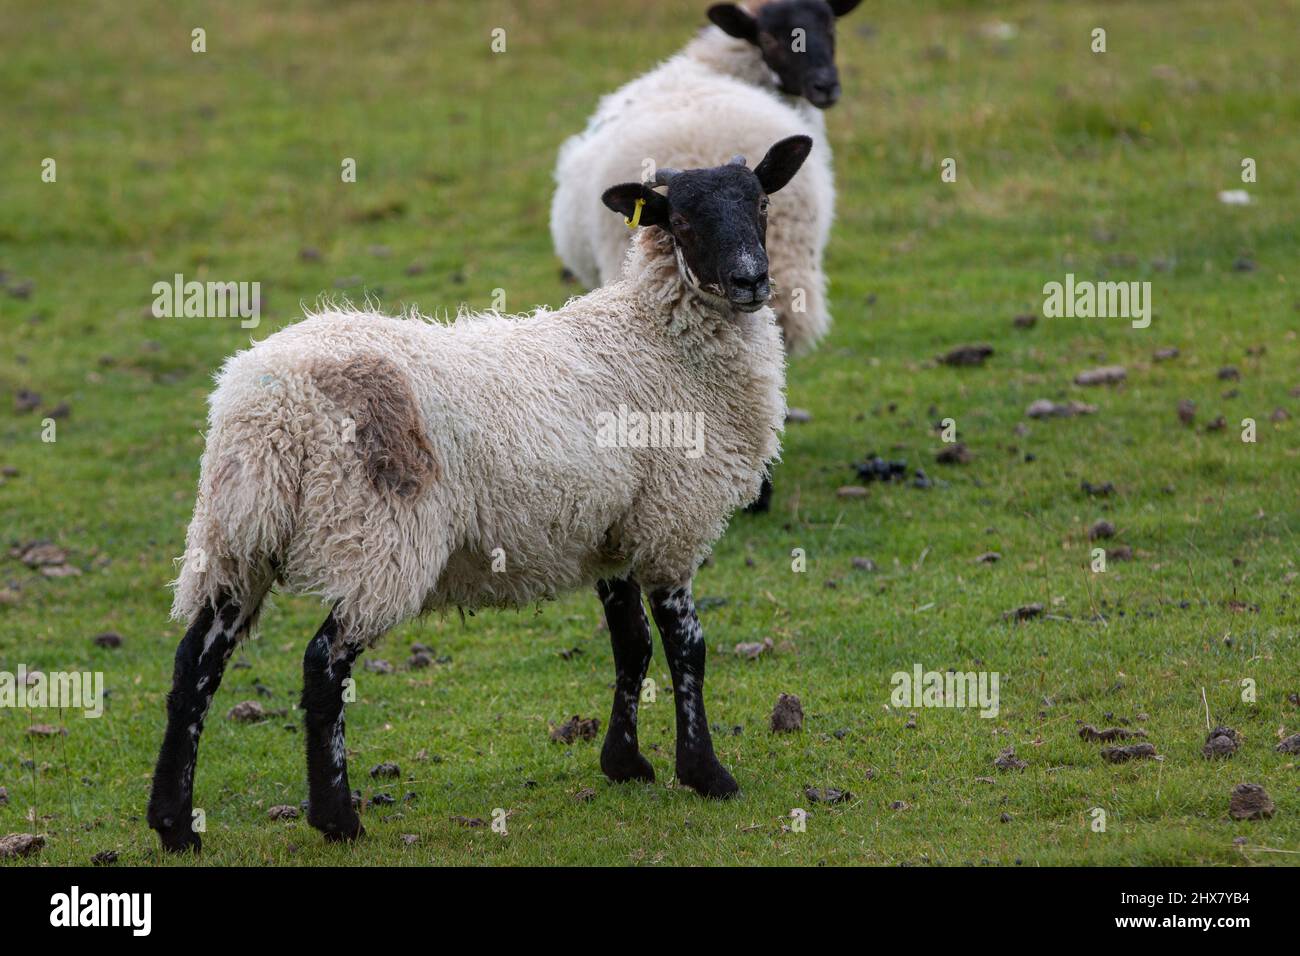 Ein Suffolk Sheep White mit schwarzem Maulkorb und Beinen, die auf dem Gras stehen, blickt zurück auf die Kamera. Ribblehead/Carnforth, North Yorkshire, England, Großbritannien Stockfoto